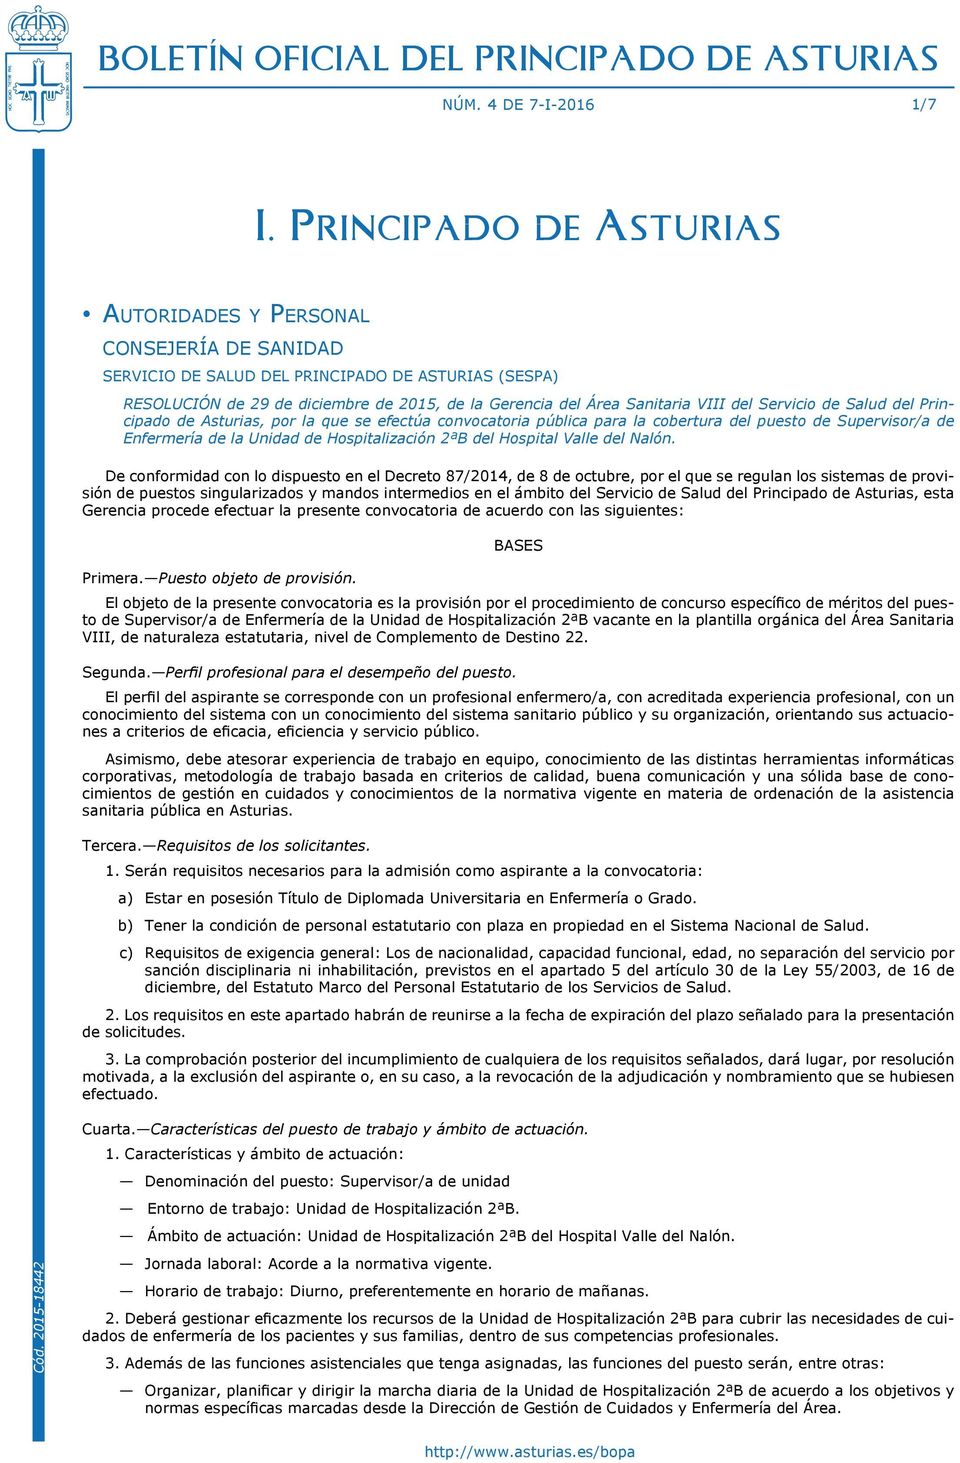 Sanitaria VIII del Servicio de Salud del Principado de Asturias, por la que se efectúa convocatoria pública para la cobertura del puesto de Supervisor/a de Enfermería de la Unidad de Hospitalización